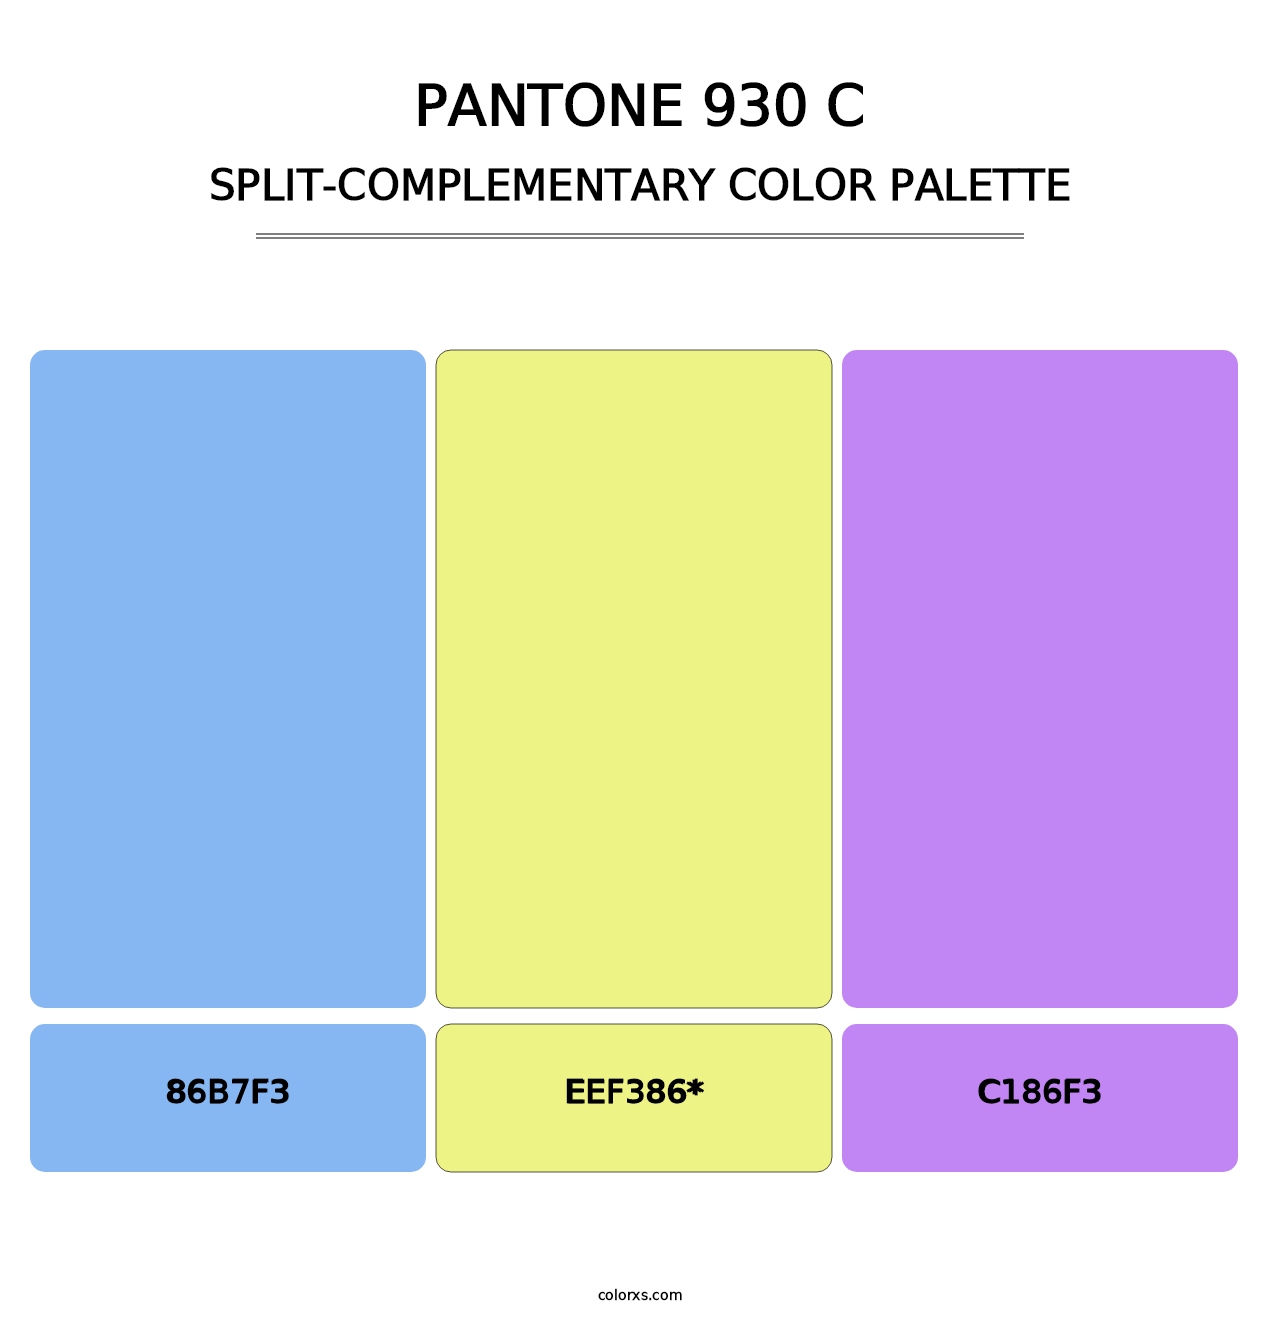 PANTONE 930 C - Split-Complementary Color Palette